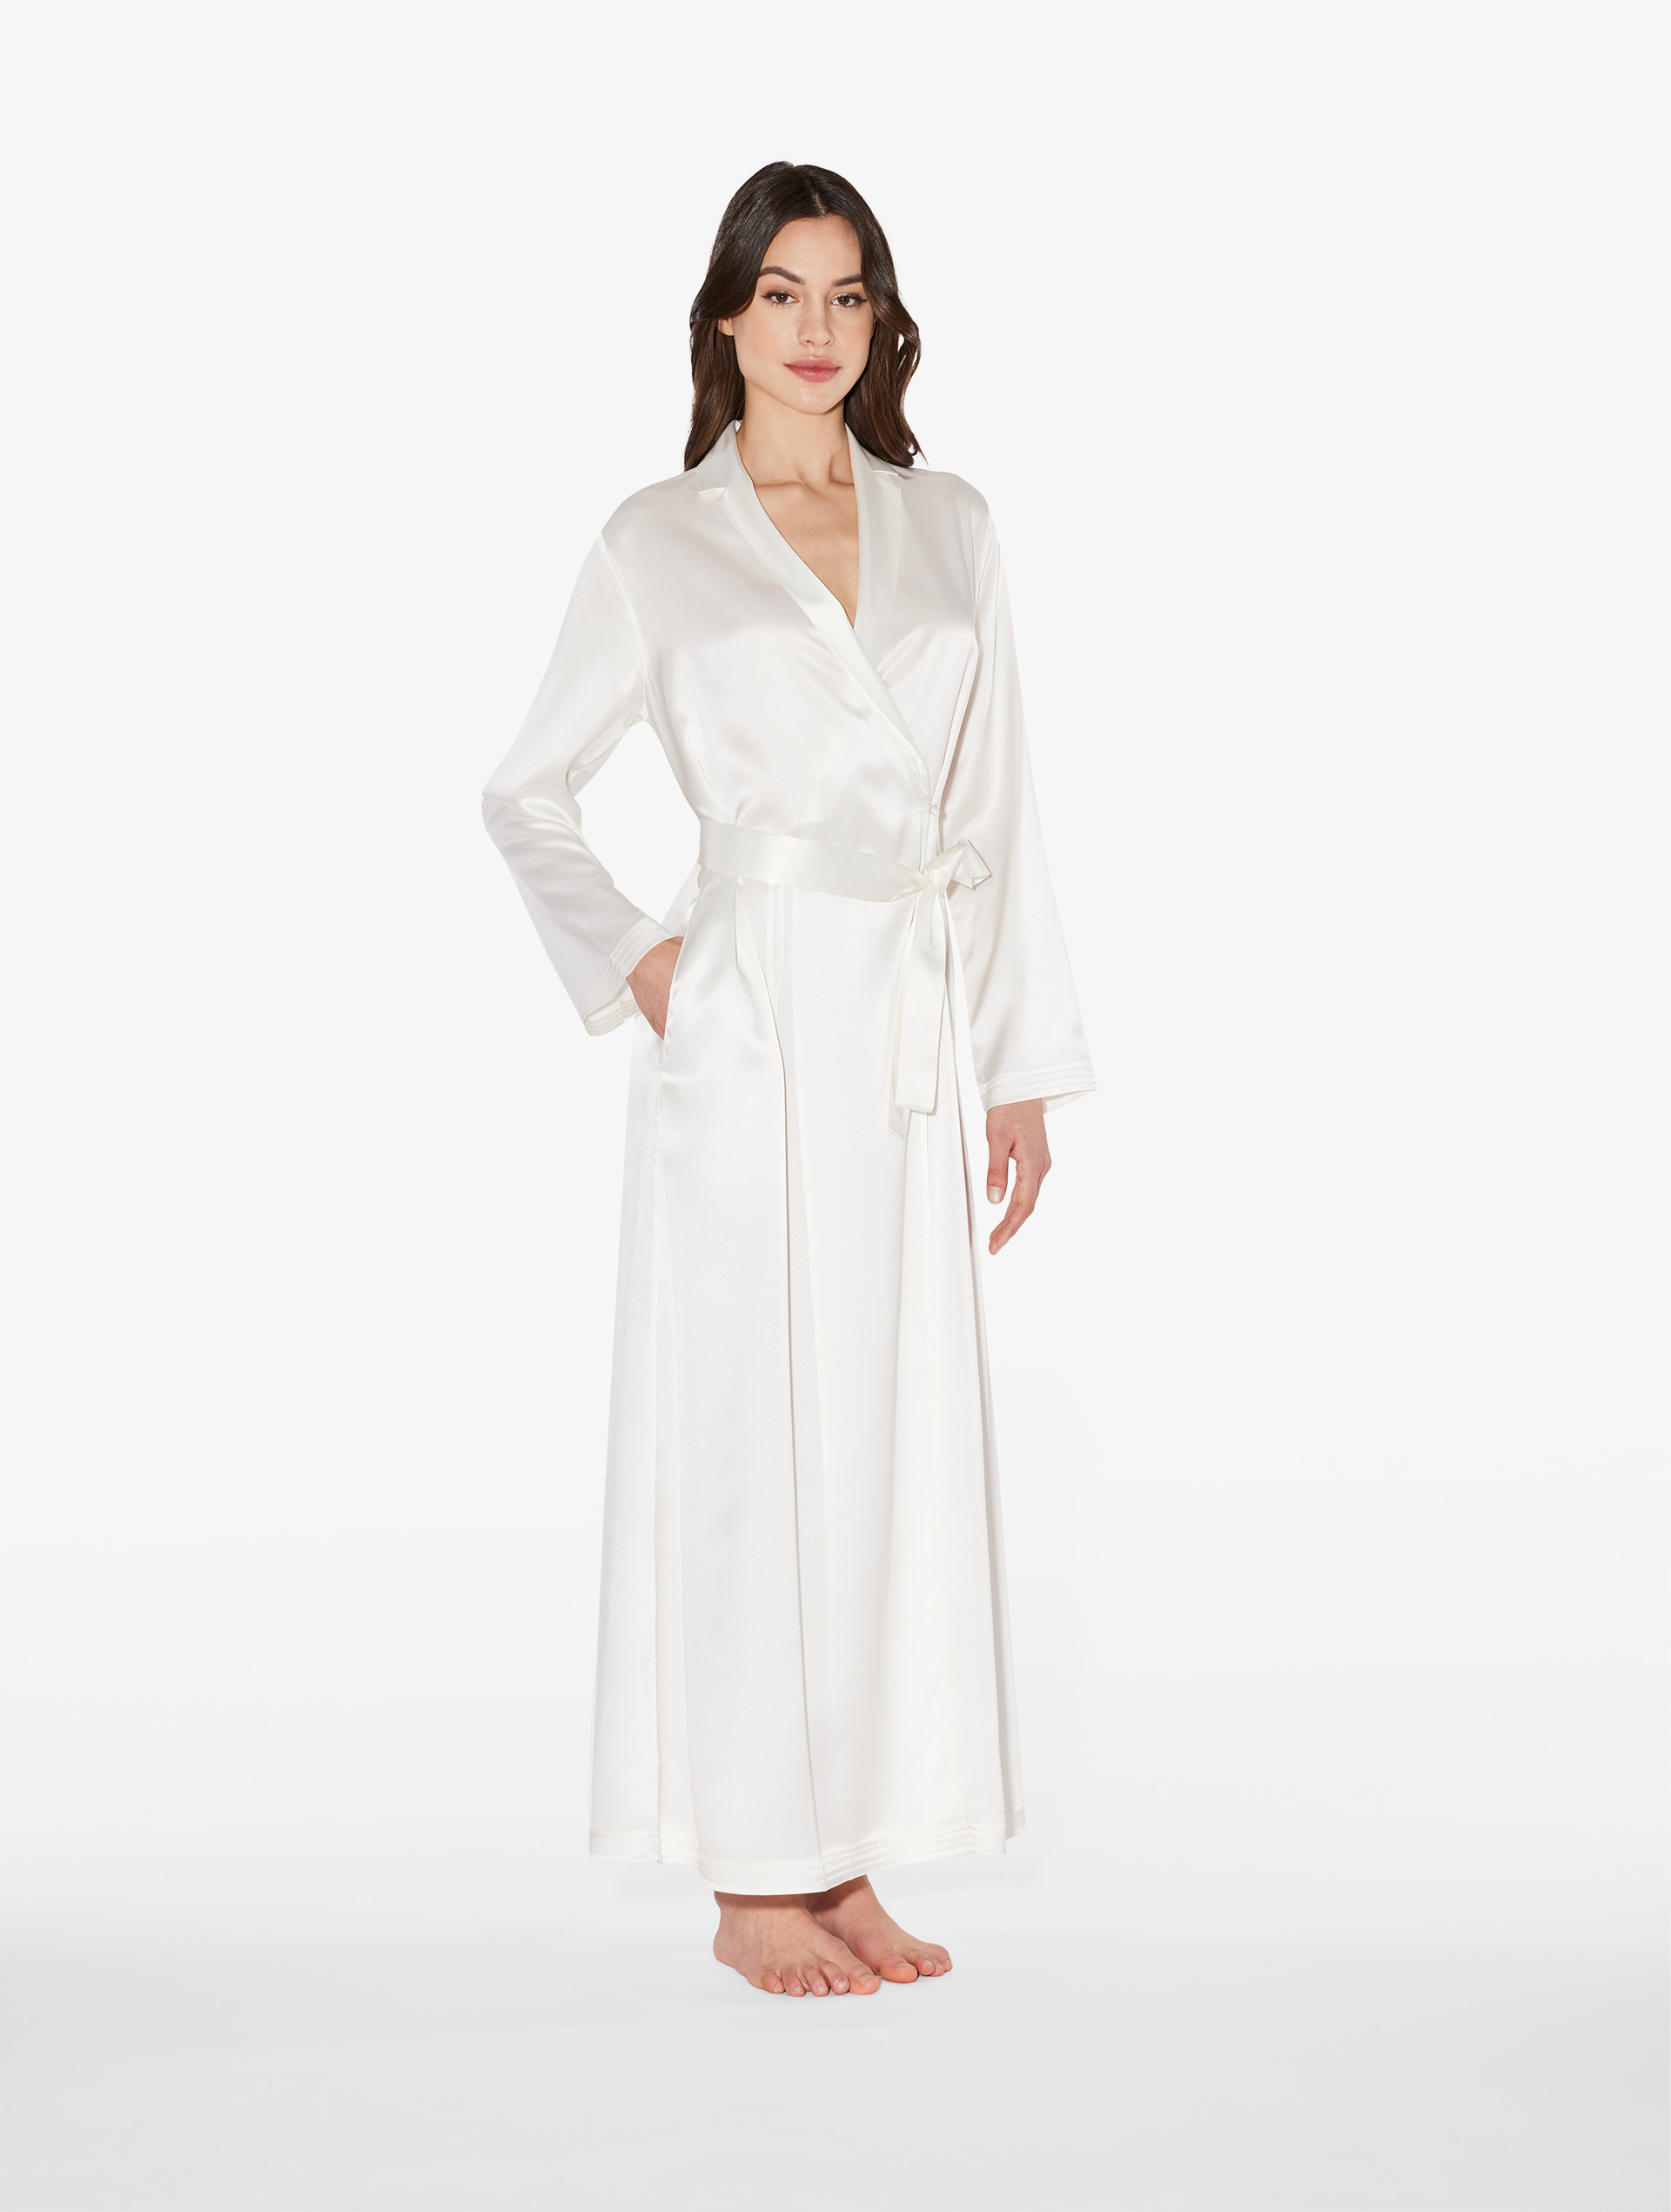 Kimono Silk Robe - Grey With White Foliage – Long Studio Design